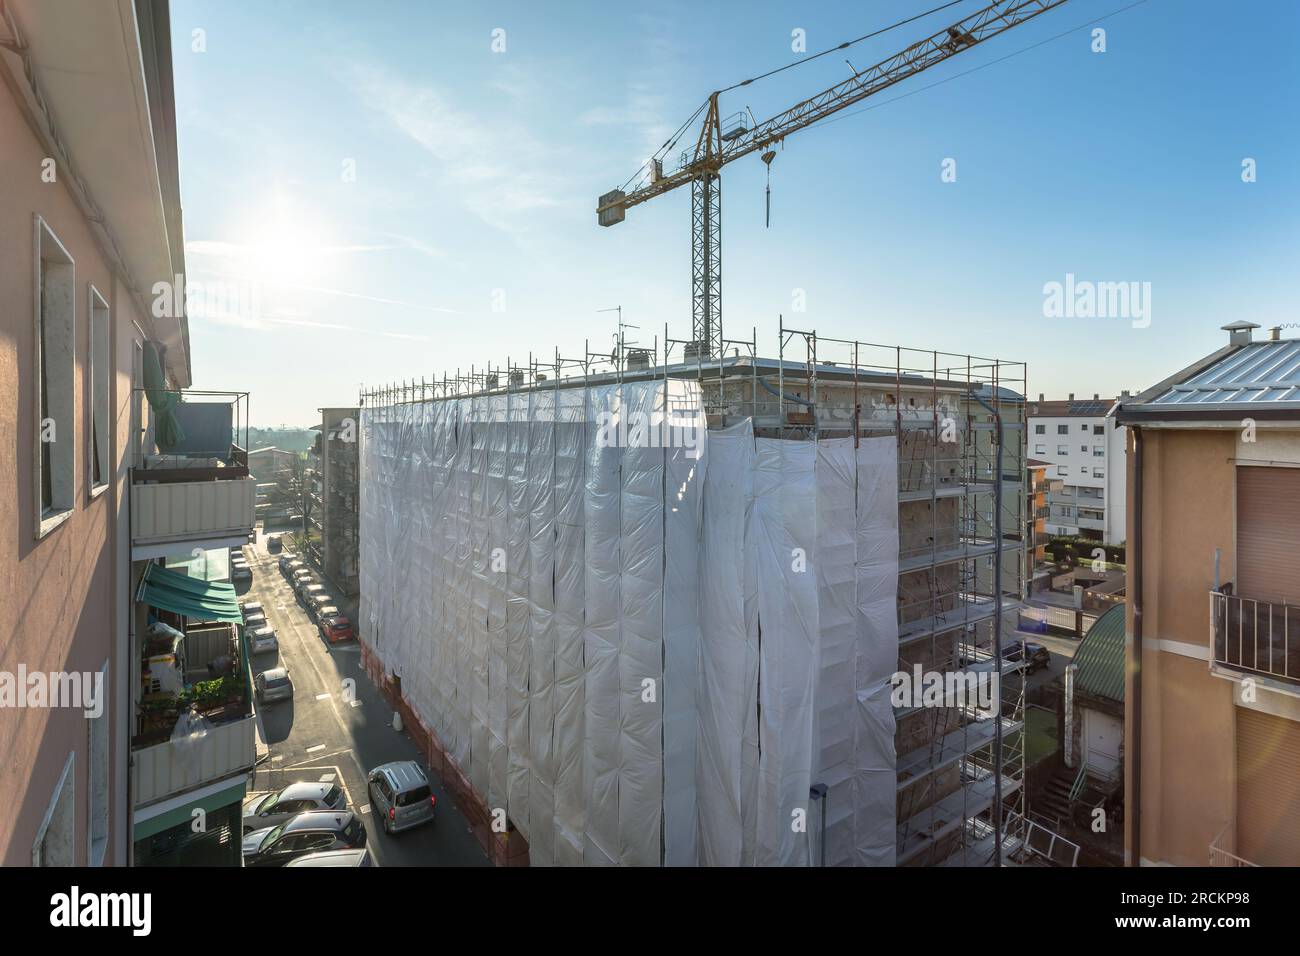 Échafaudage étendu fournissant des plates-formes pour les travaux en cours sur un nouveau bloc d'appartements, le grand bâtiment en construction avec échafaudage, New constr Banque D'Images